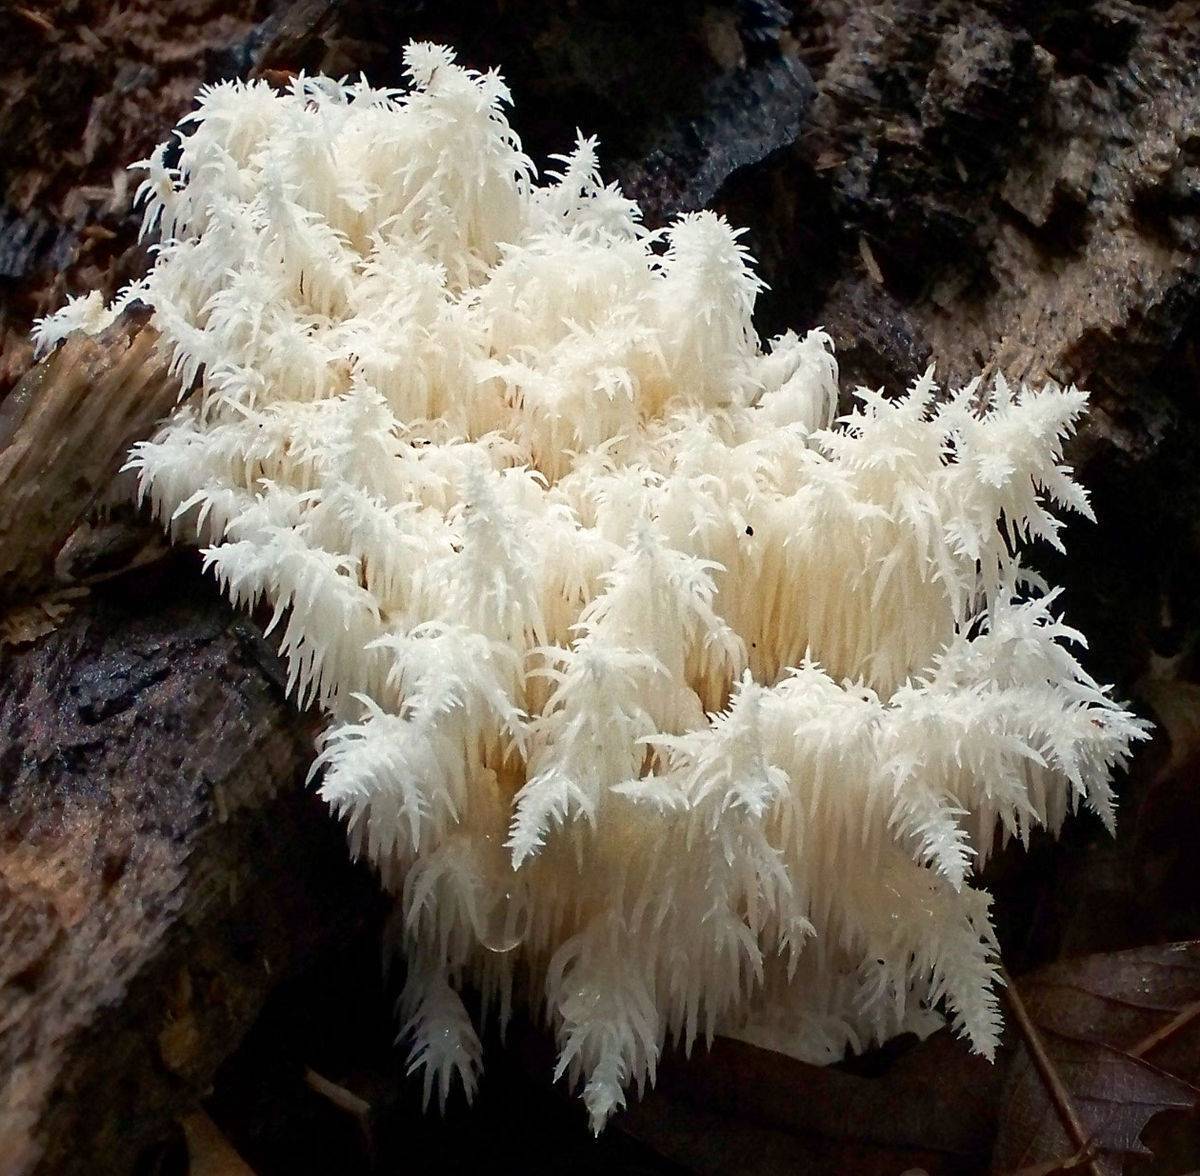 Особенности кораллового гриба